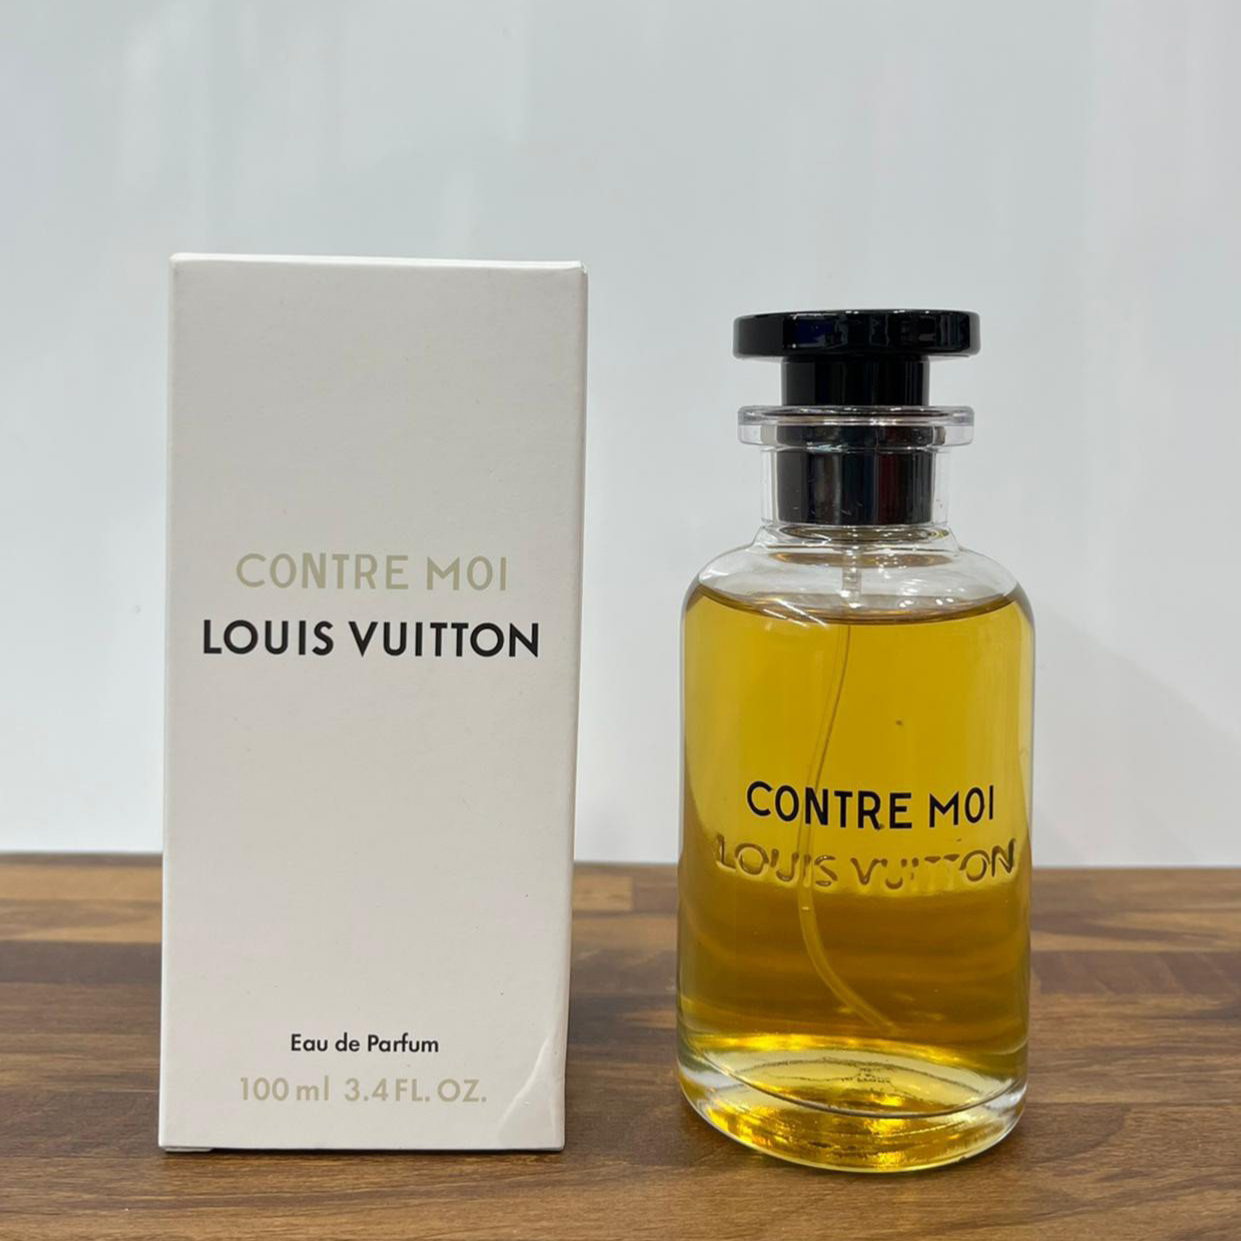 Nước hoa Louis Vuitton Contre Moi nổi bật với độ lưu hương và tỏa hương tốt